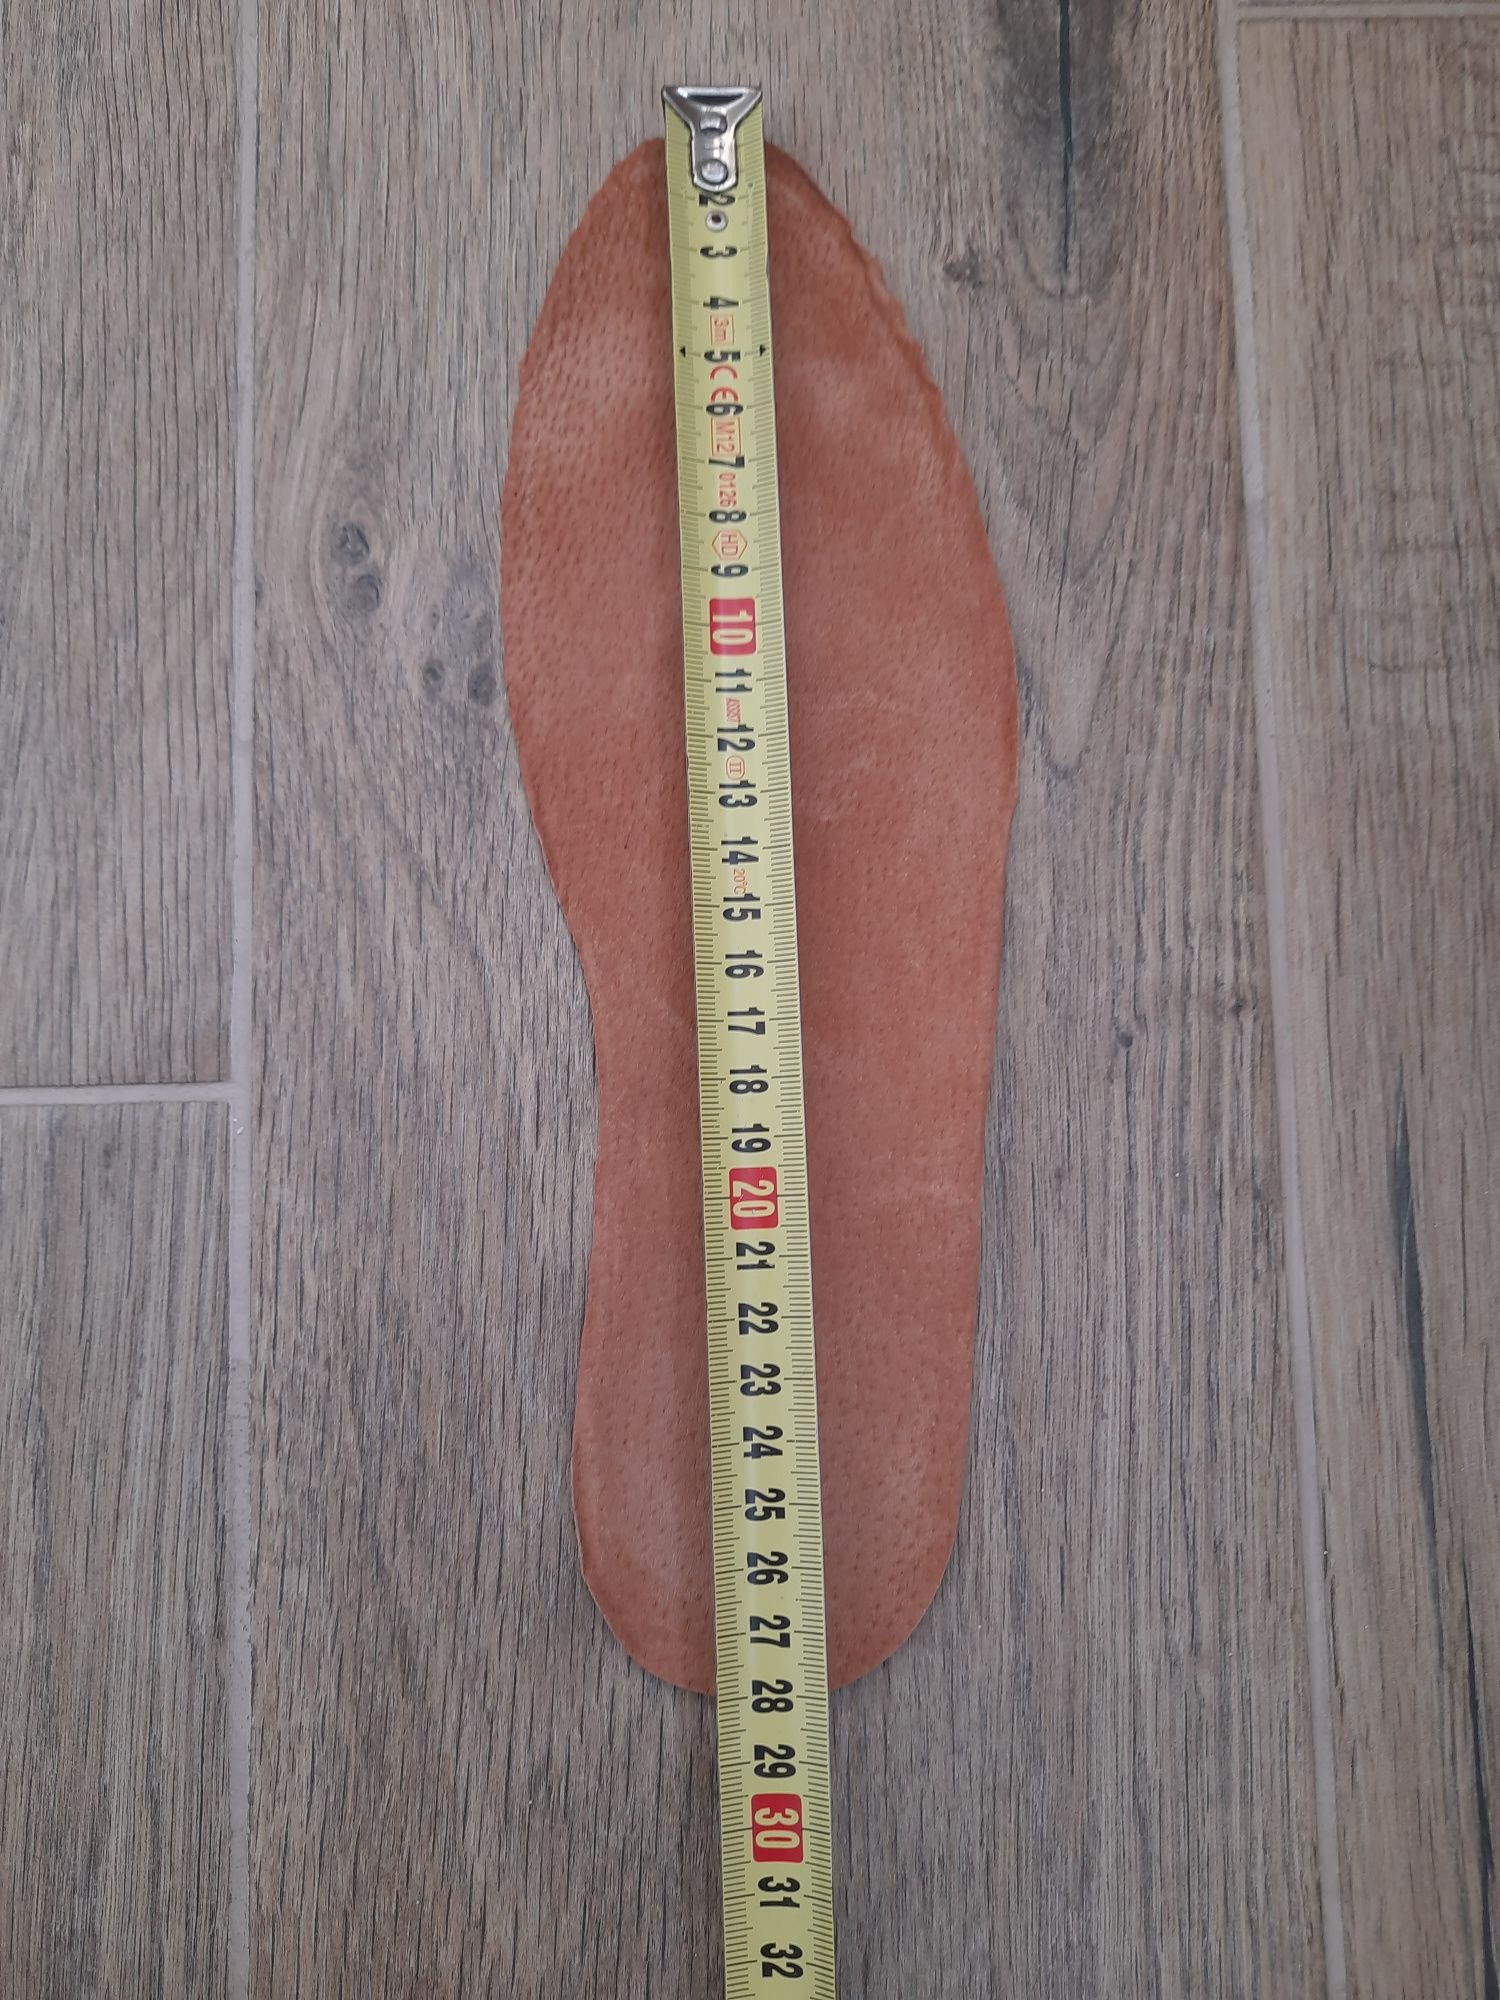 Туфли, сандалии Topman р 42 (28 см) ц 1100 гр , новые, кожа